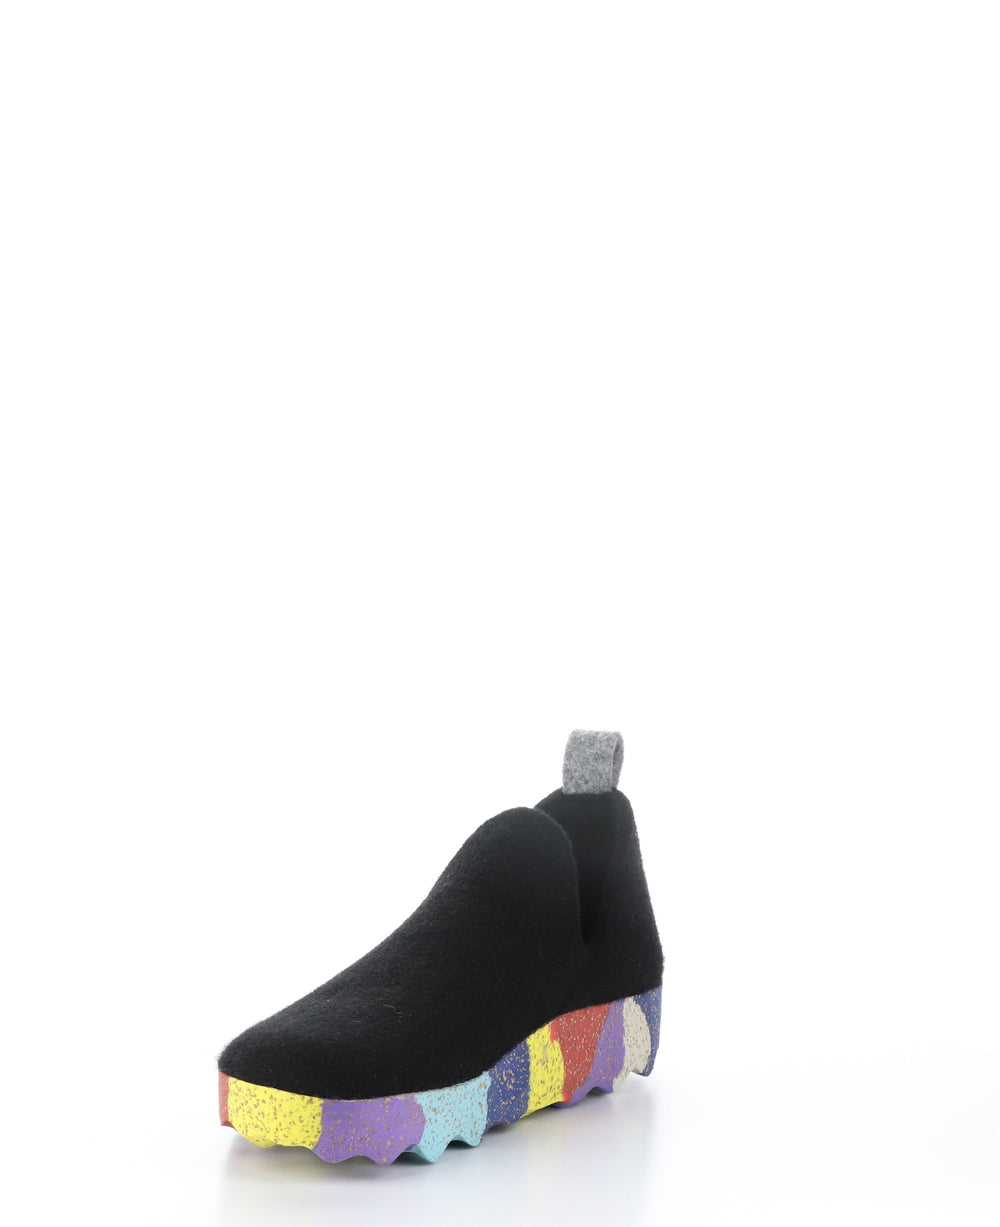 CITY003ASP Black/Multi Round Toe Shoes|CITY003ASP Chaussures à Bout Rond in Noir